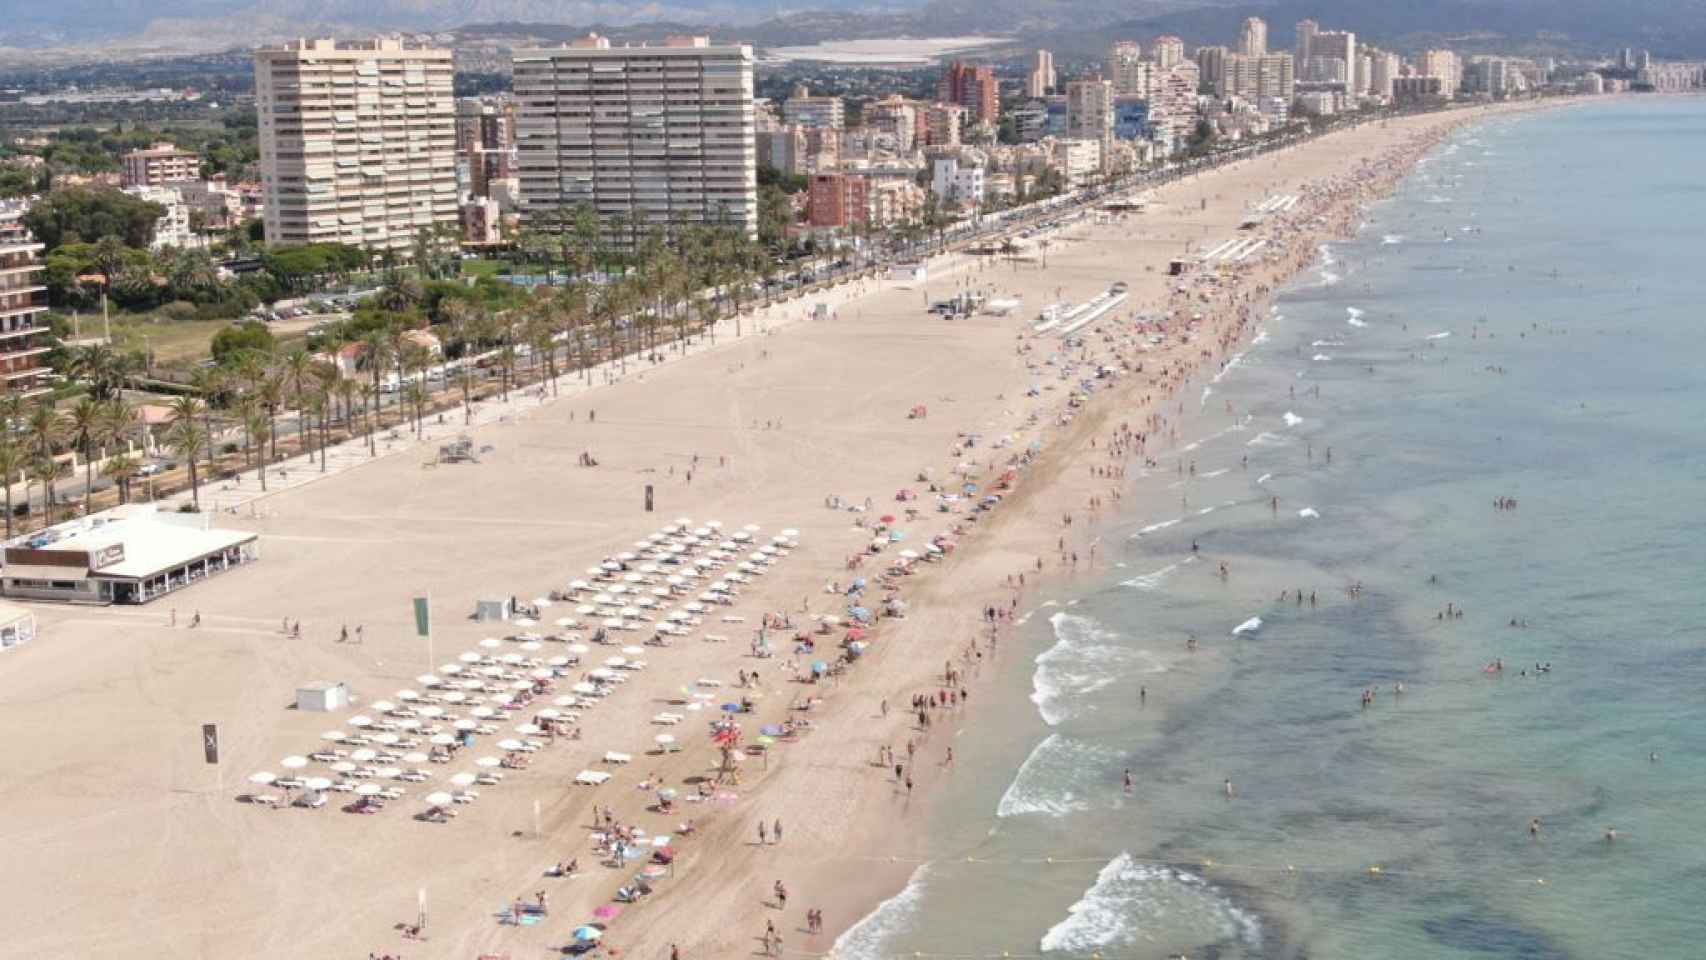 Vista de la Playa de San Juan en Alicante con todas las medidas anticovid.